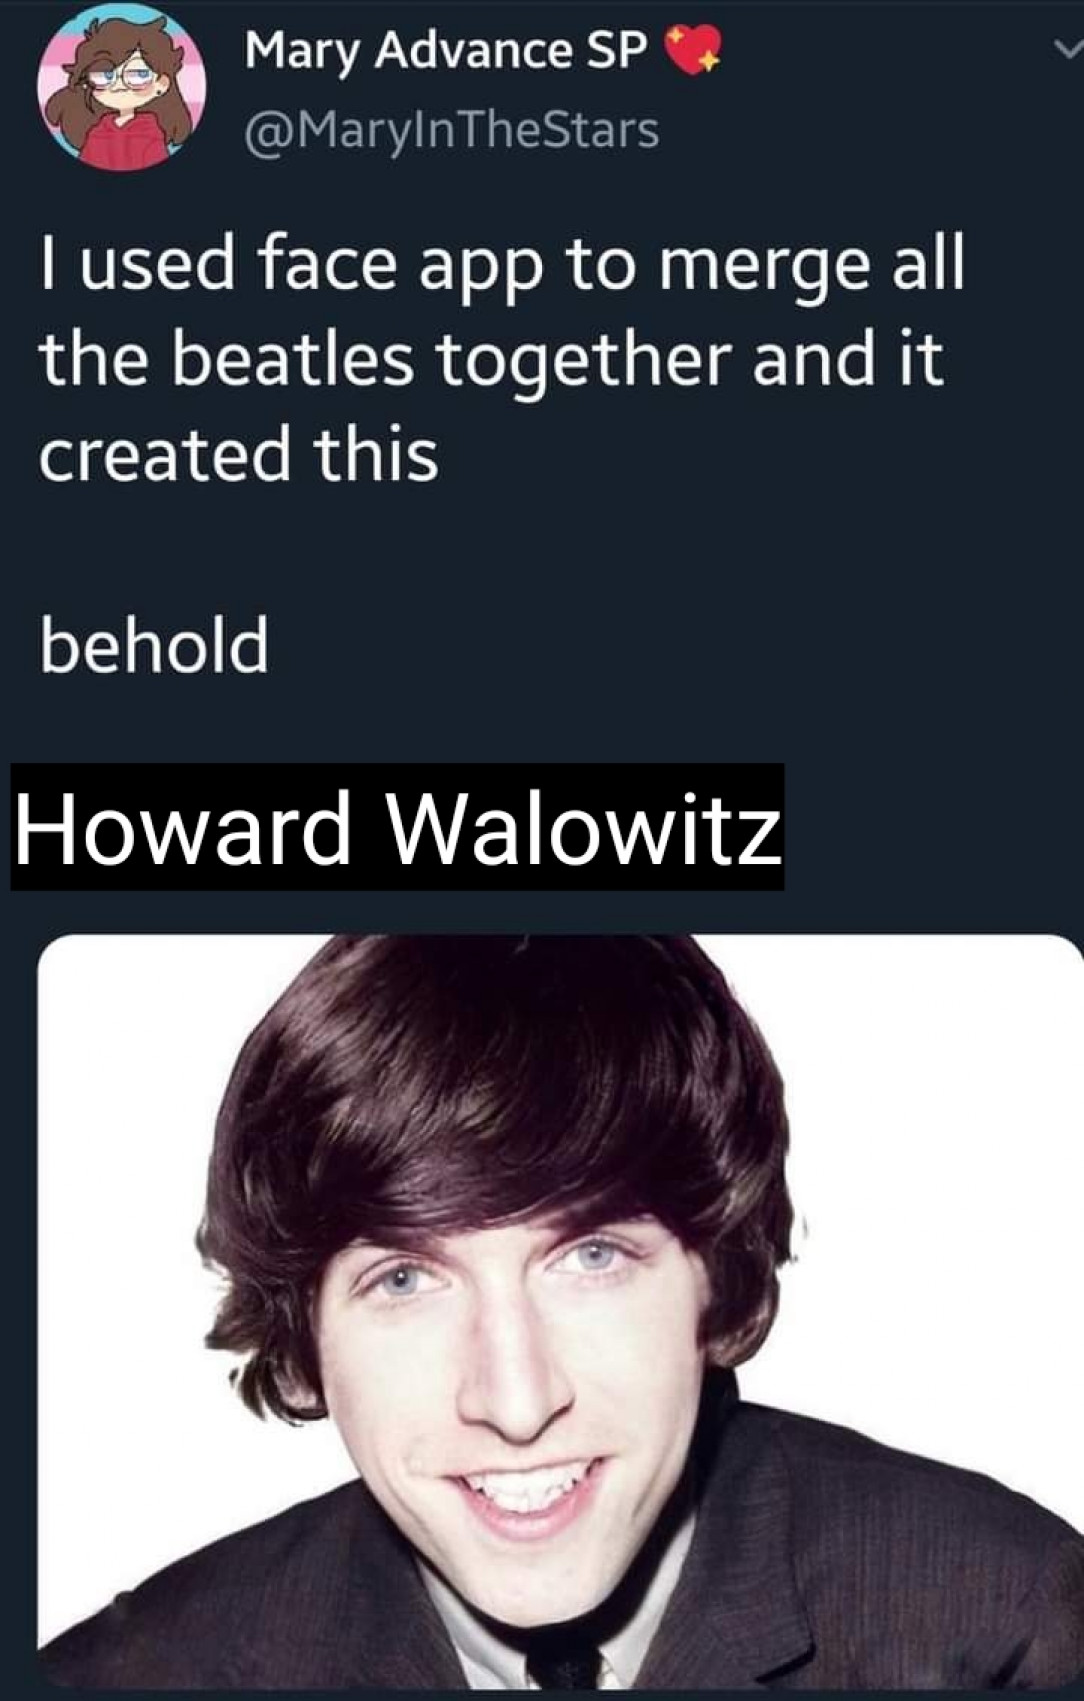 Howard Wolowitz*